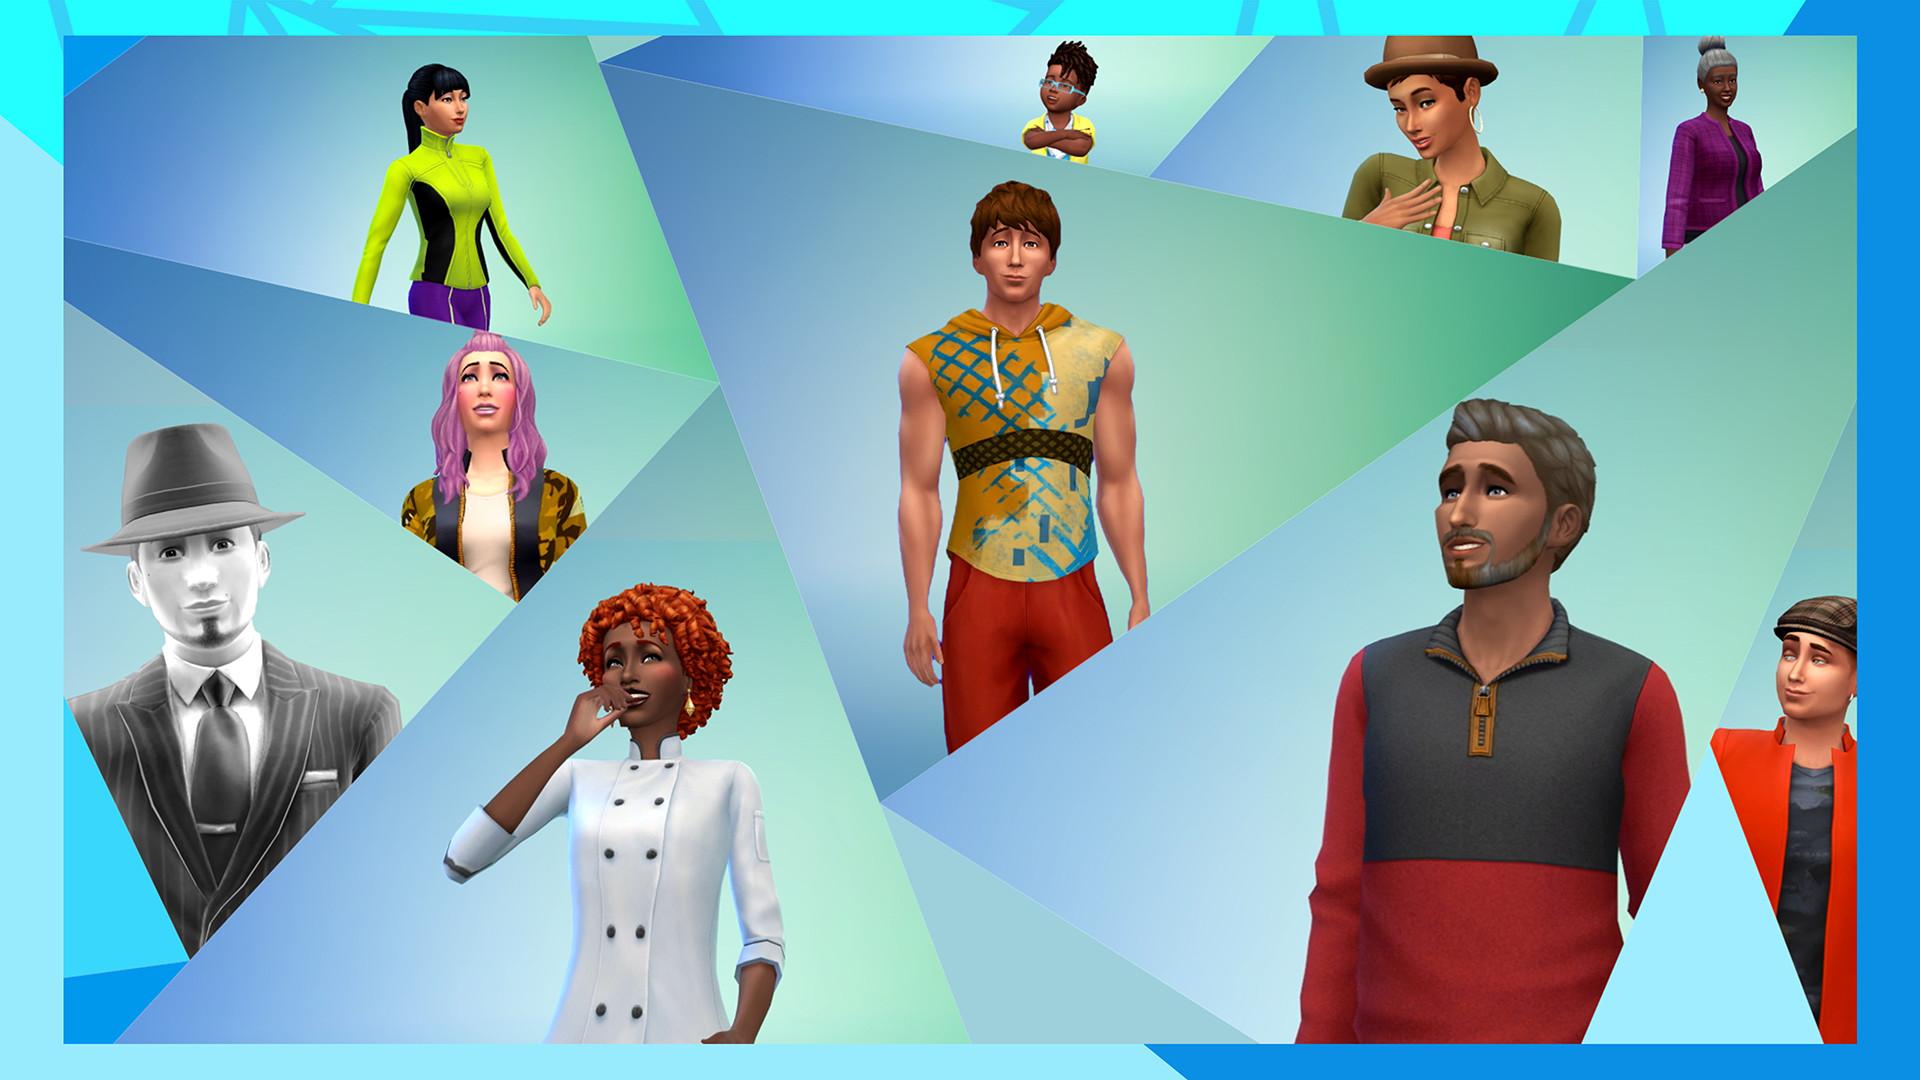 Все чит-коды Sims 2 — на деньги, потребности, близнецов, питомцев, строительство, видео и другое